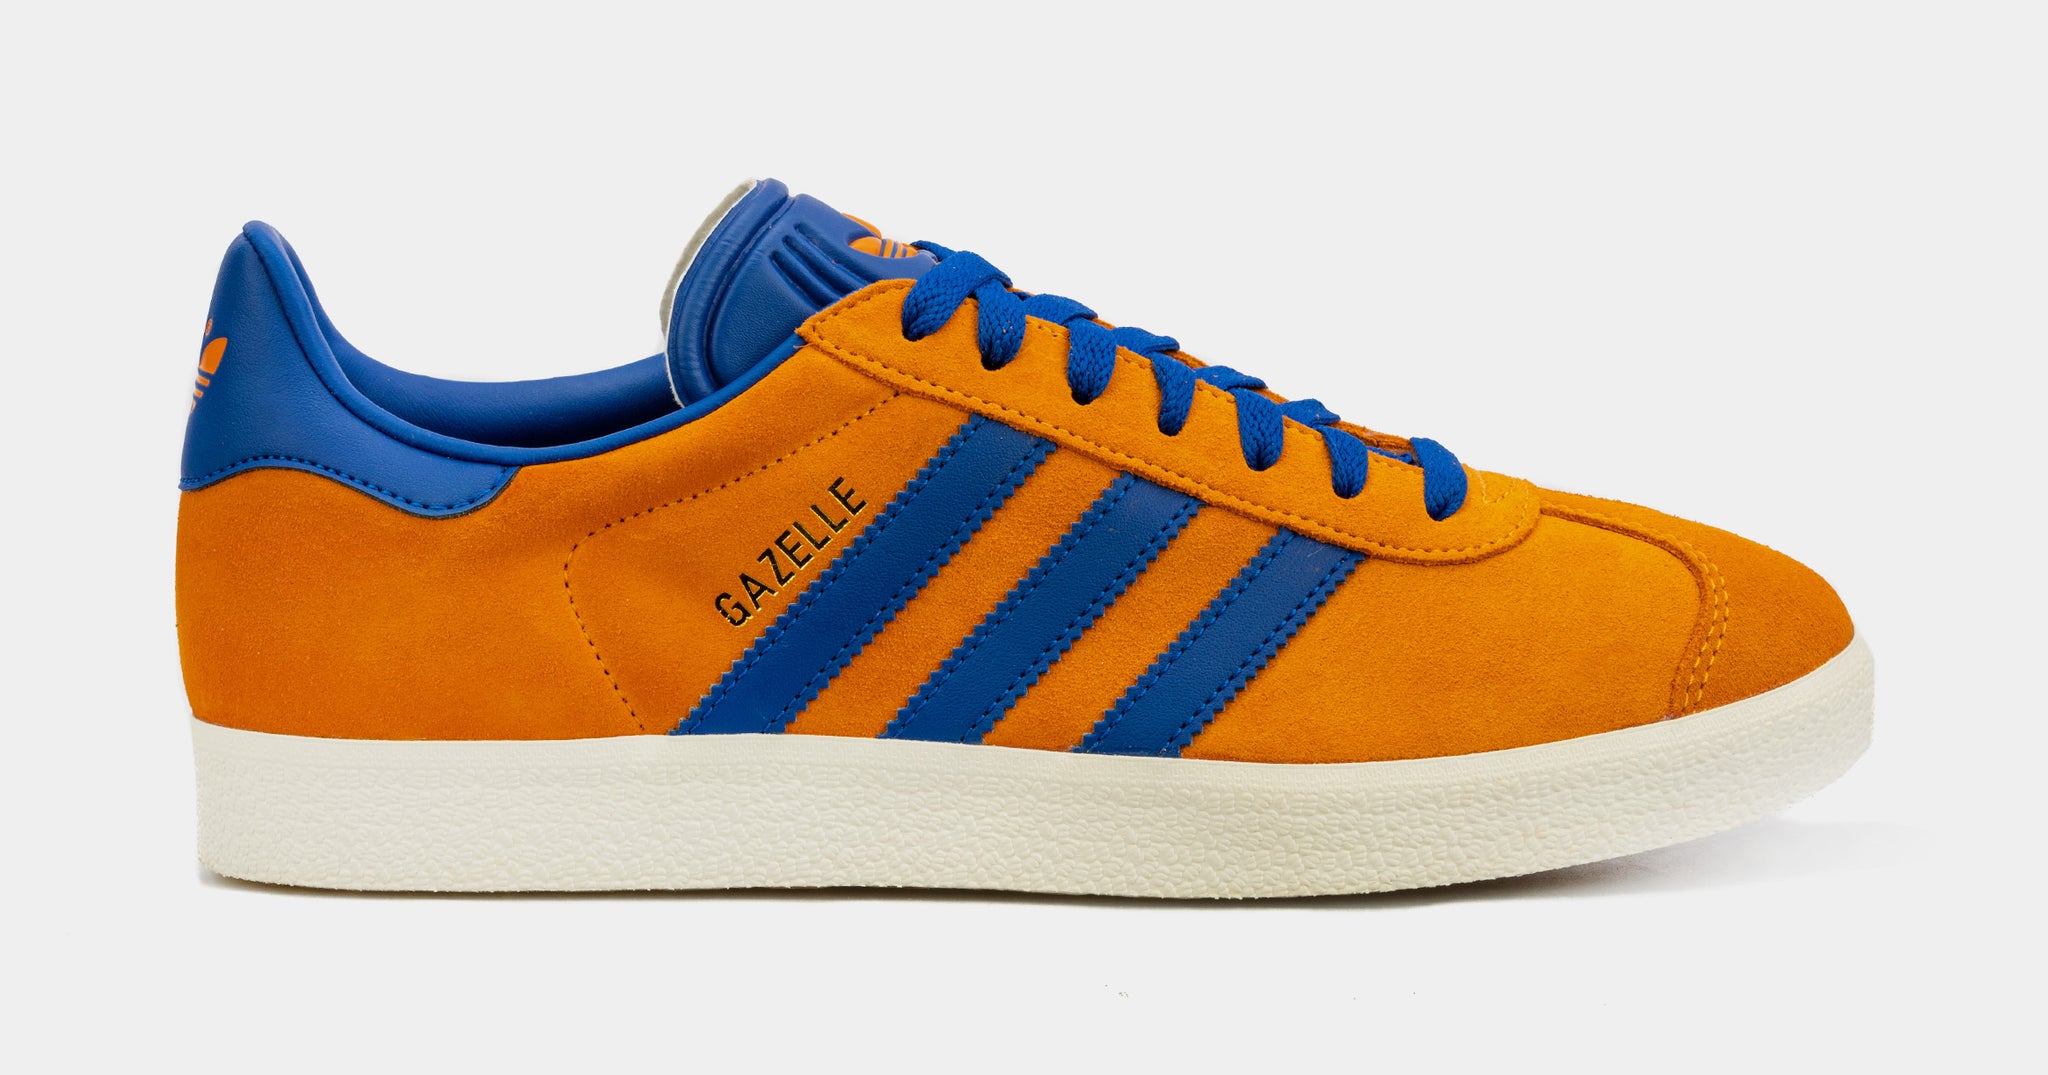 Palace Orange adidas Shoes Shoe Mens GY7374 – Gazelle Lifestyle Blue